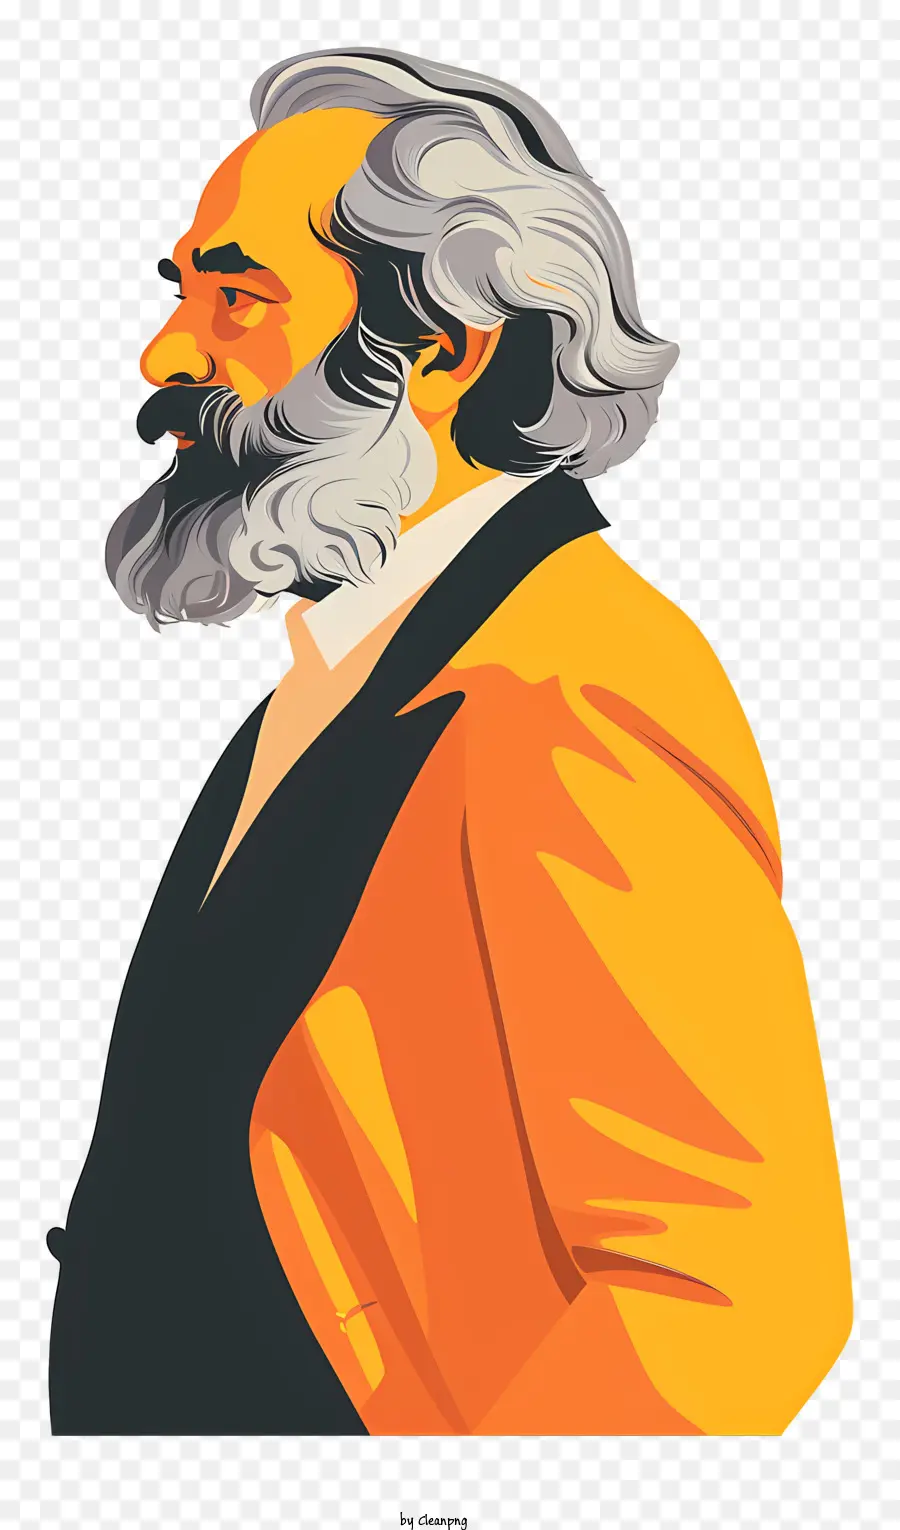 karl marx - Uomo di profilo con giacca arancione e cravatta